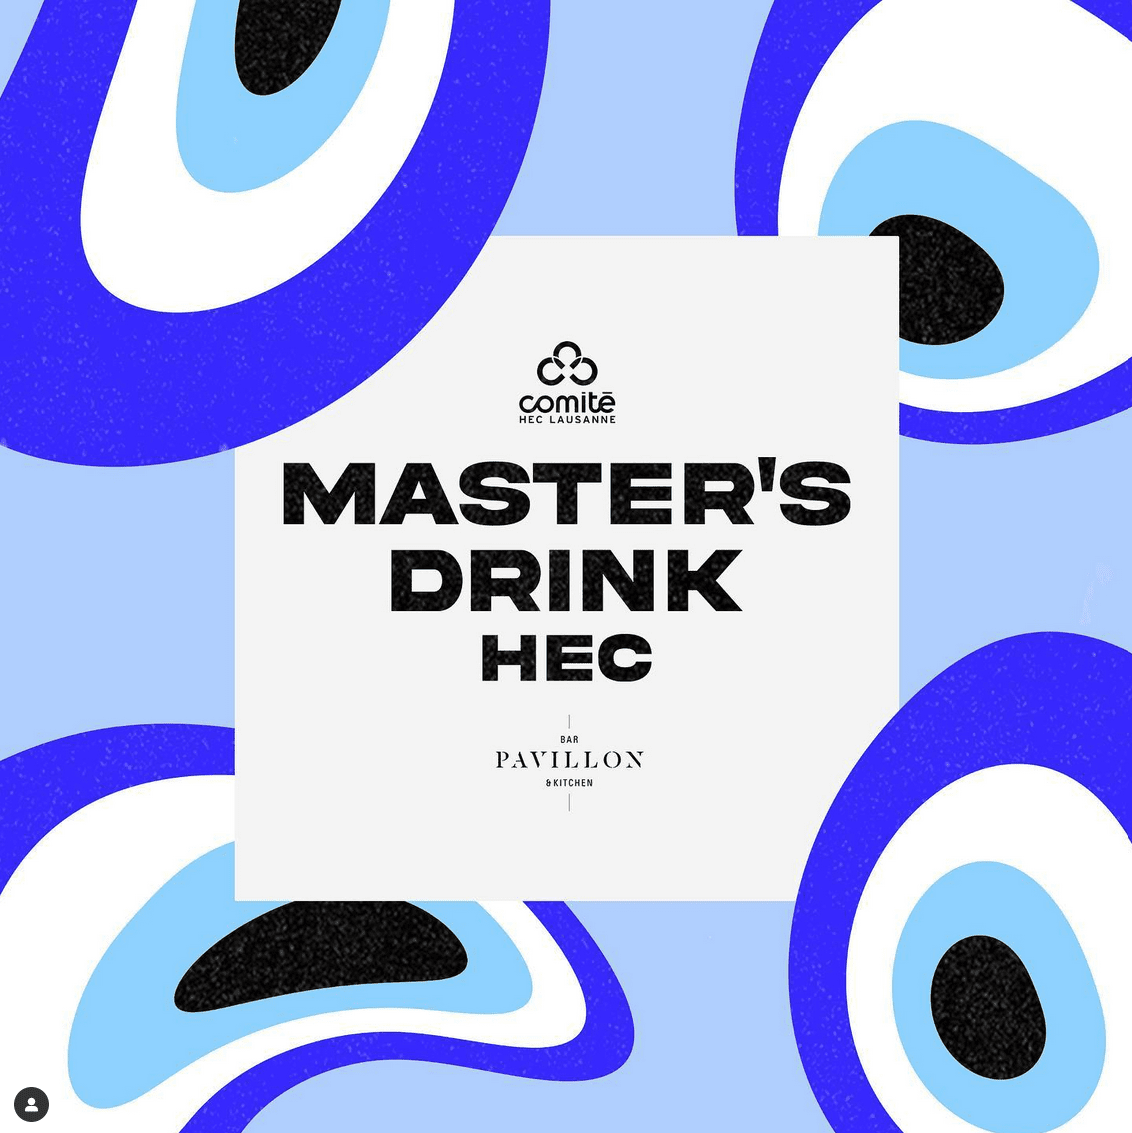 L'affiche du Verre des Masters de février 2023 du Comité HEC, aux teintes bleu qui font penser à un nazar boncuk.